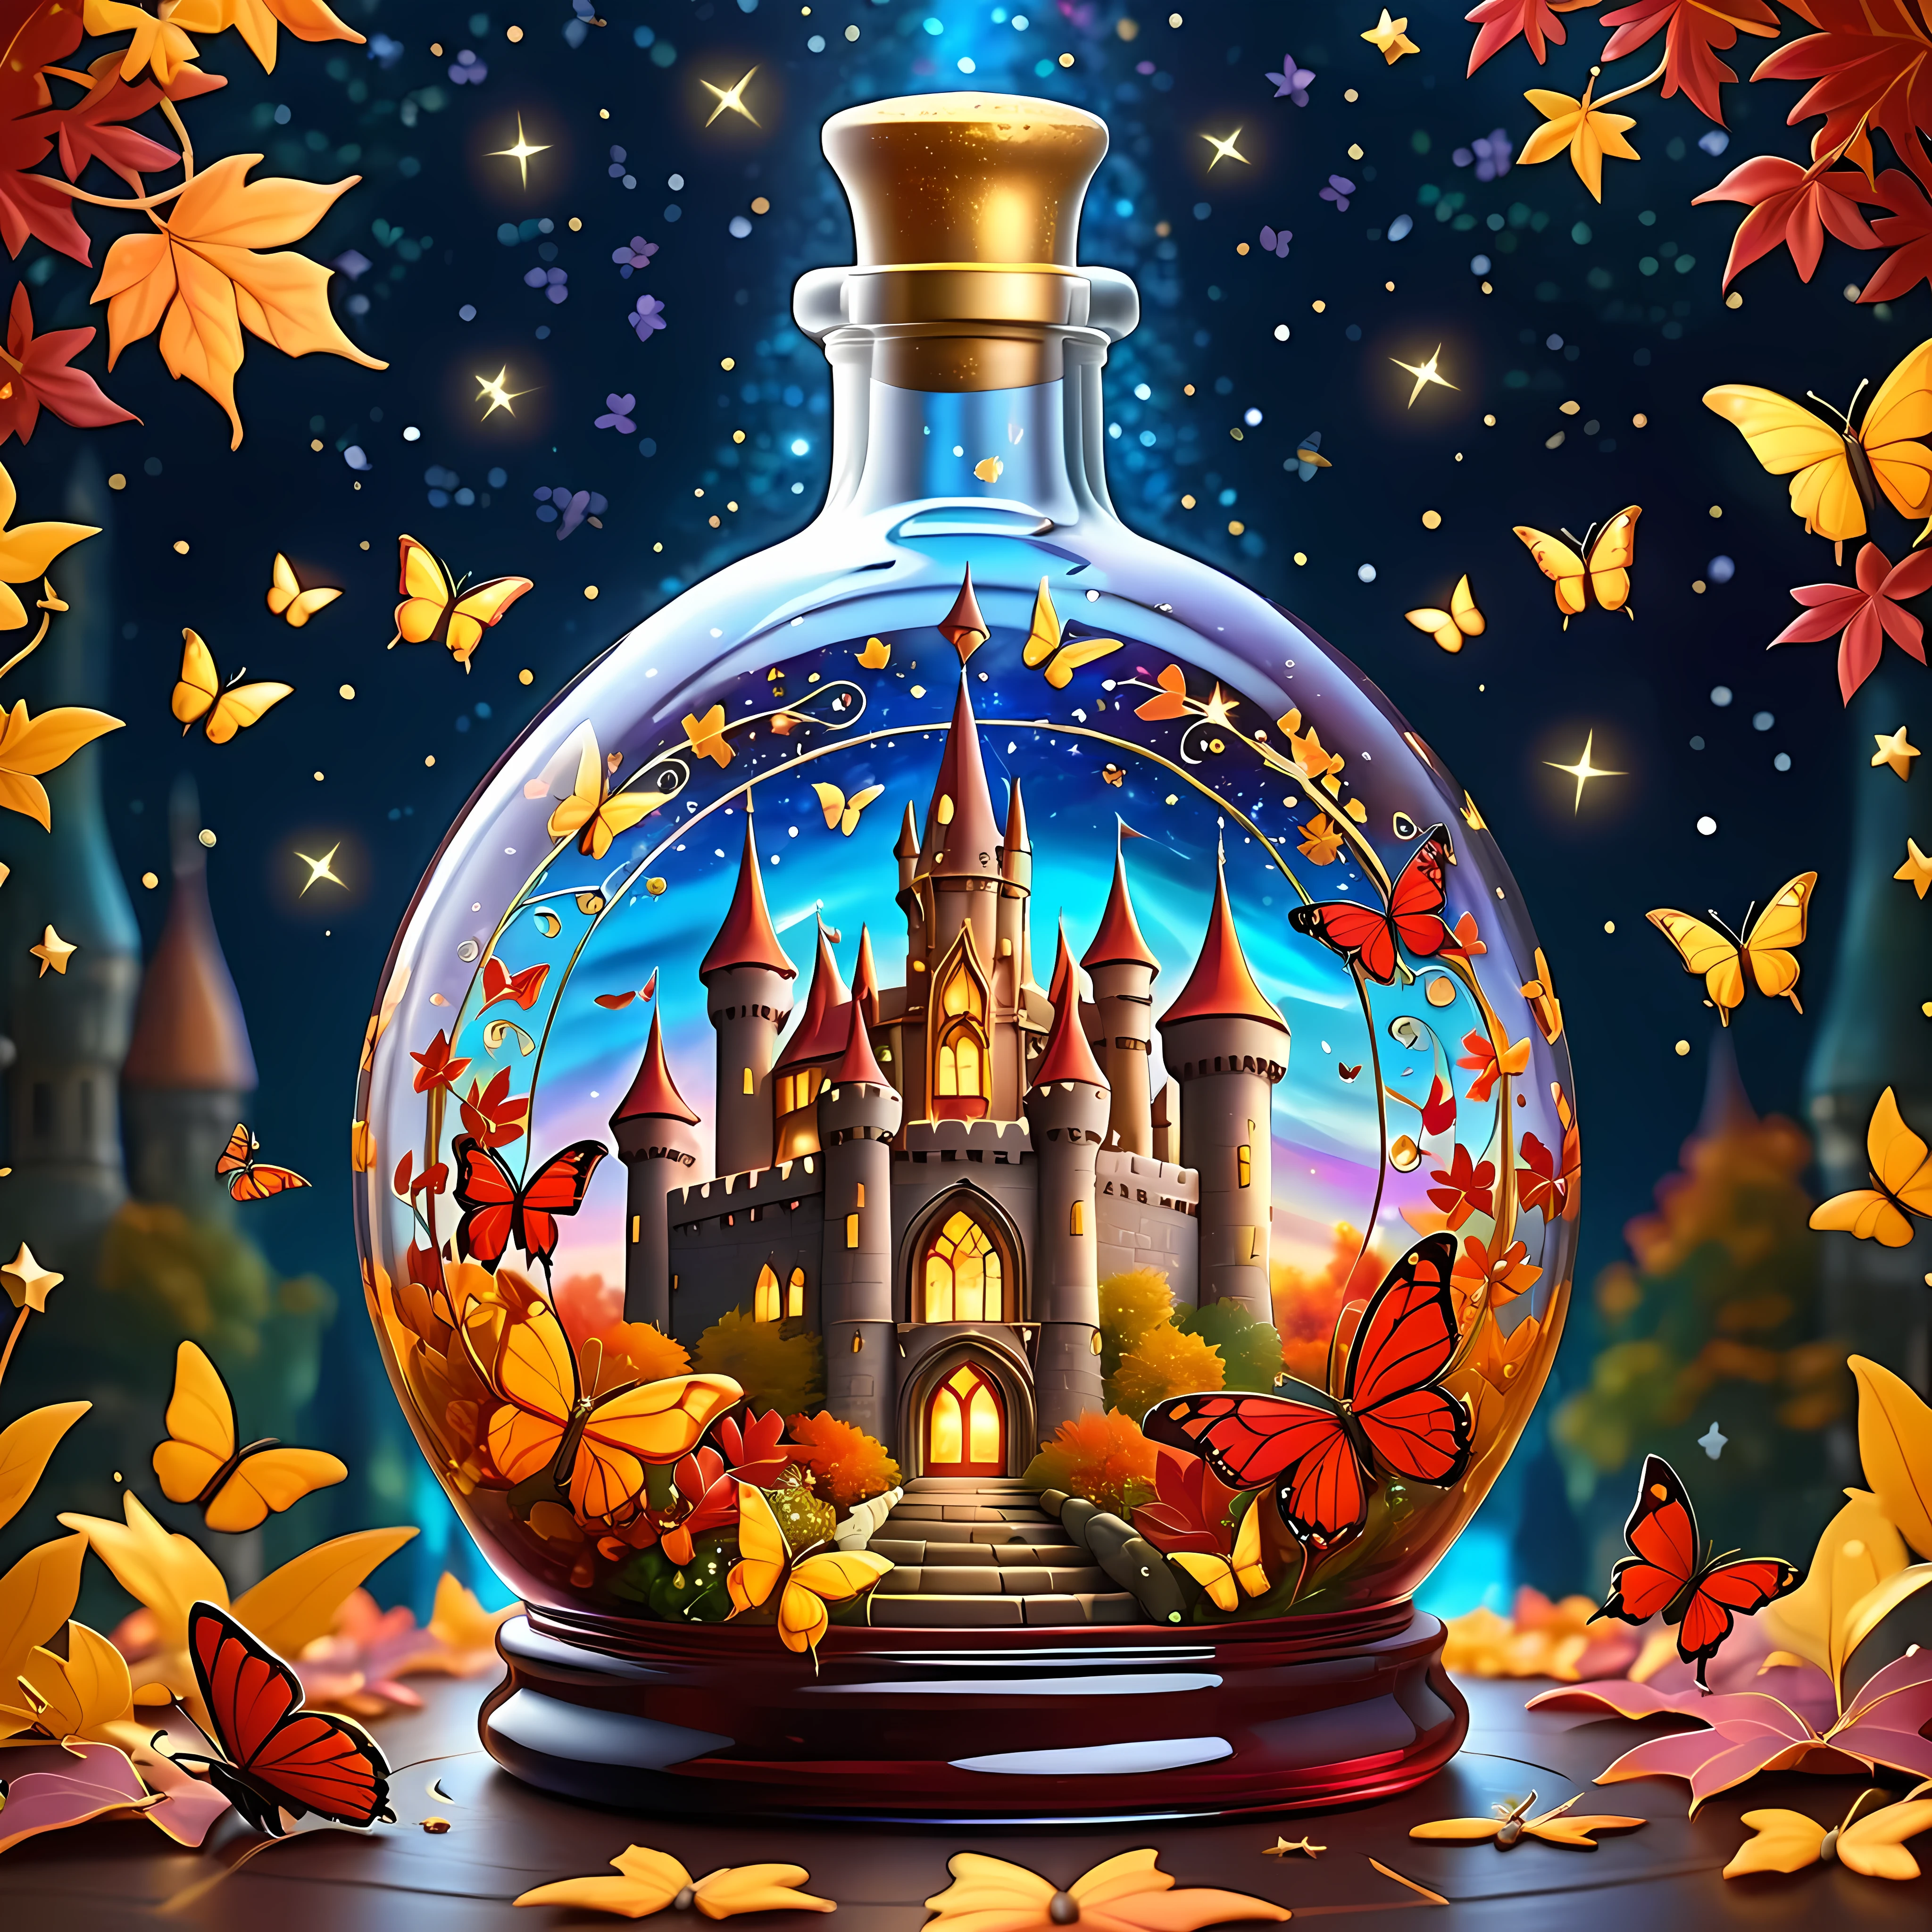 明亮的卡通, 神奇的秋季充滿活力的城堡巧妙地放置在一個寬大的華麗玻璃瓶內, 被閃爍的星星和旋轉的星系組成的廣闊宇宙所包圍, 瓶子裡有金色和深紅色的葉子, 和令人驚嘆的蝴蝶, 最高 16K 分辨率的杰作, 卓越品质